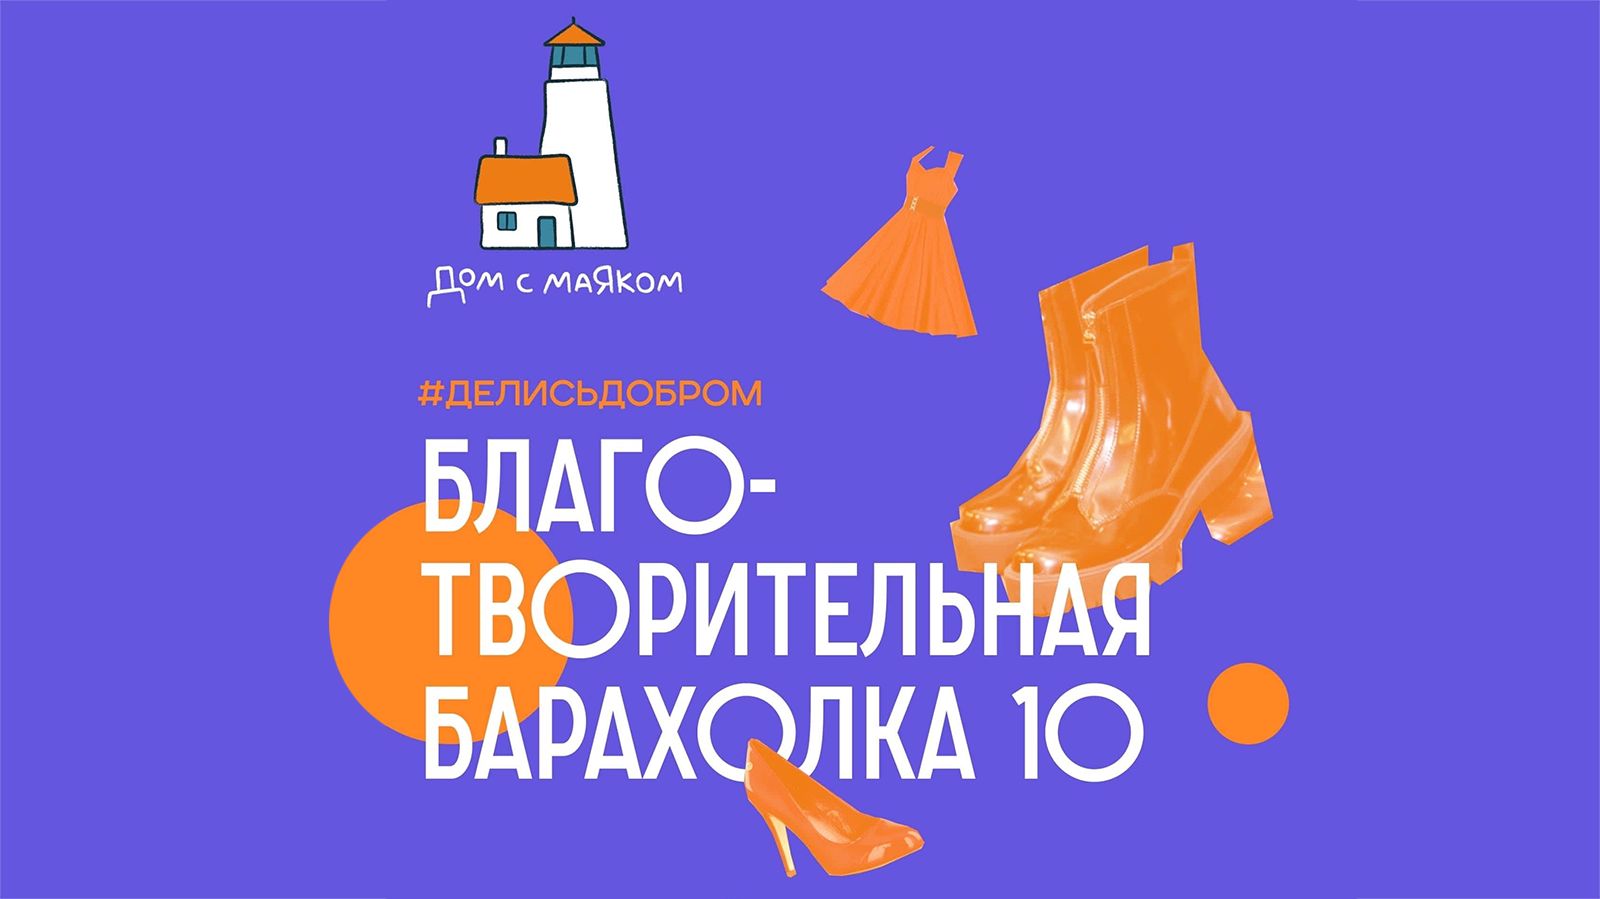 15 мая 2022 года в отеле Балчуг Кемпински Москва состоится десятая Благотворительная барахолка